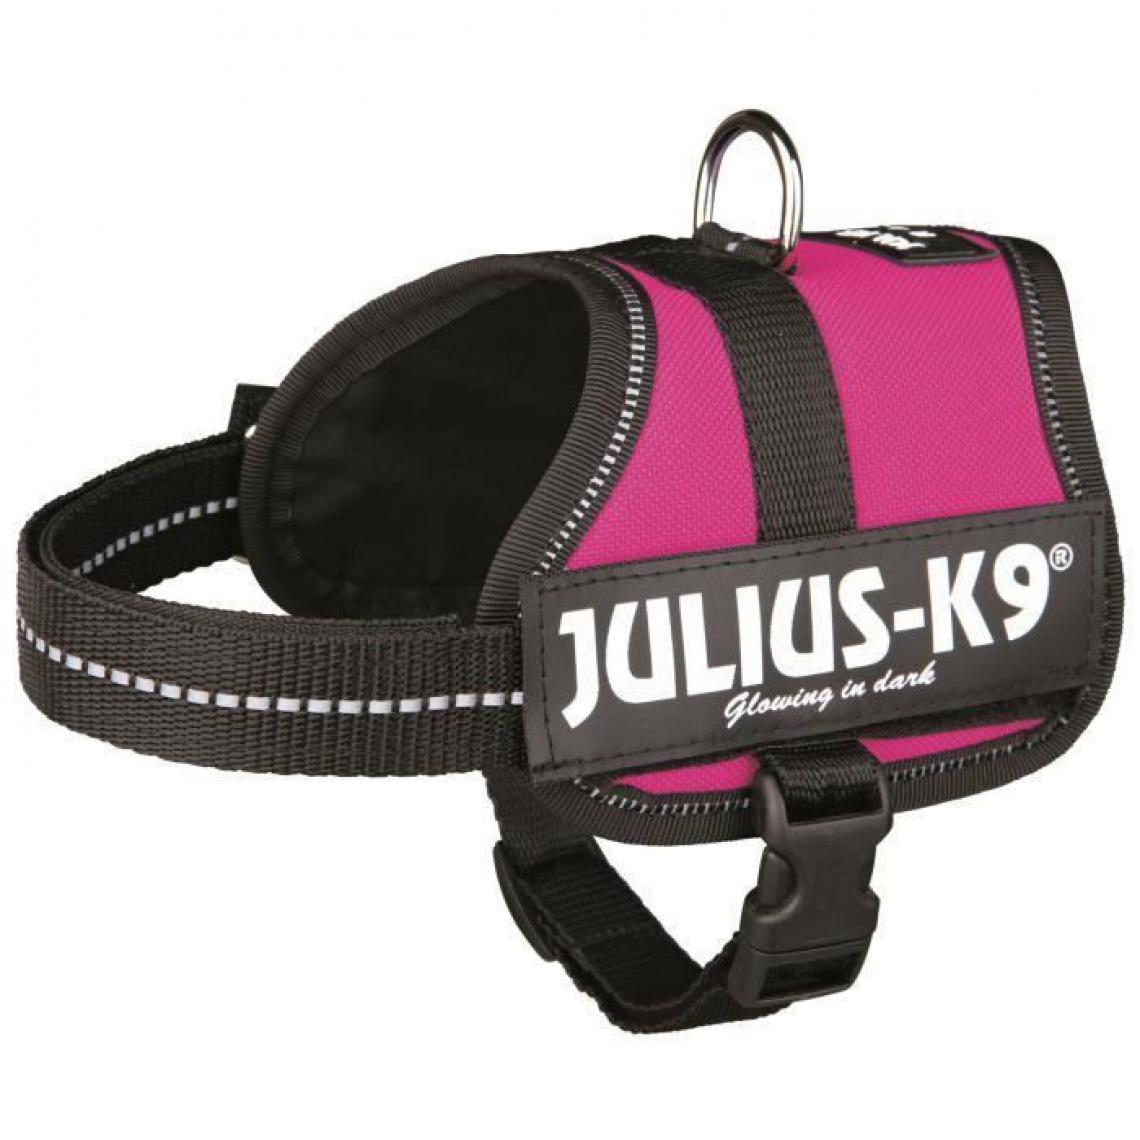 Julius K9 - Harnais Power Julius-K9 - Baby 2 - XS-S : 33-45 cm-18 mm - Fuchsia - Pour chien - Equipement de transport pour chien